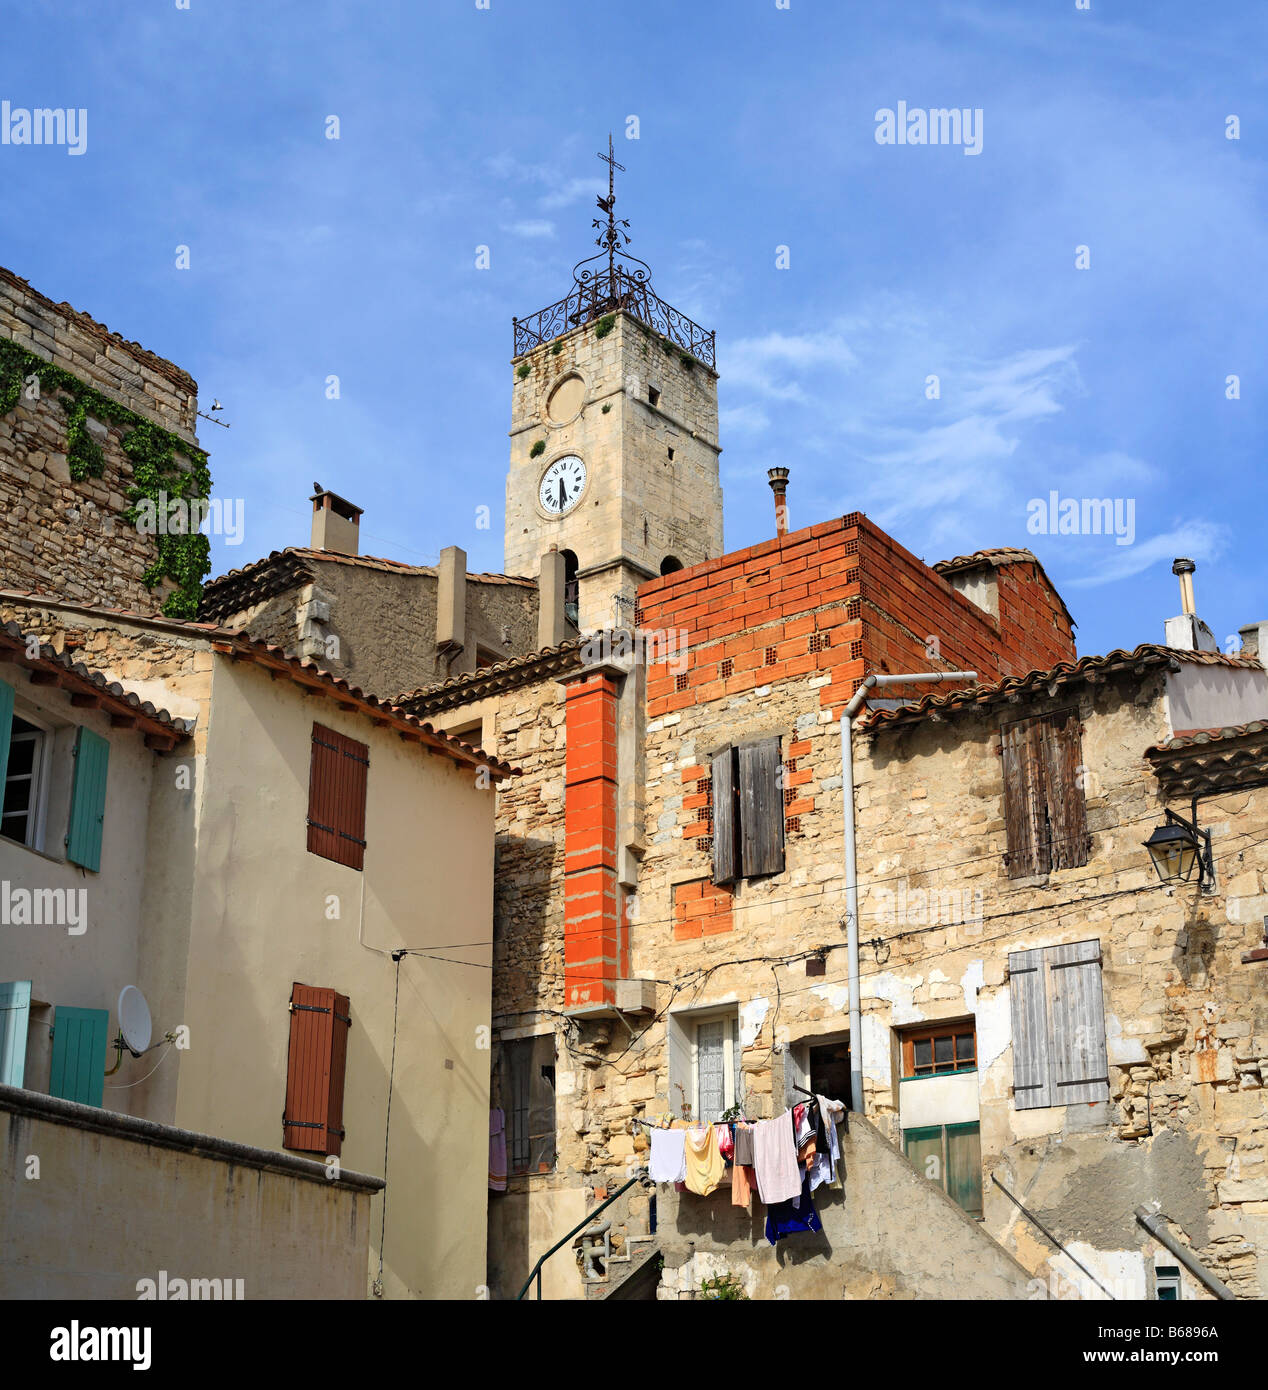 Saint Gilles (Saint Gilles du Gard), Languedoc Roussillon, France Stock Photo